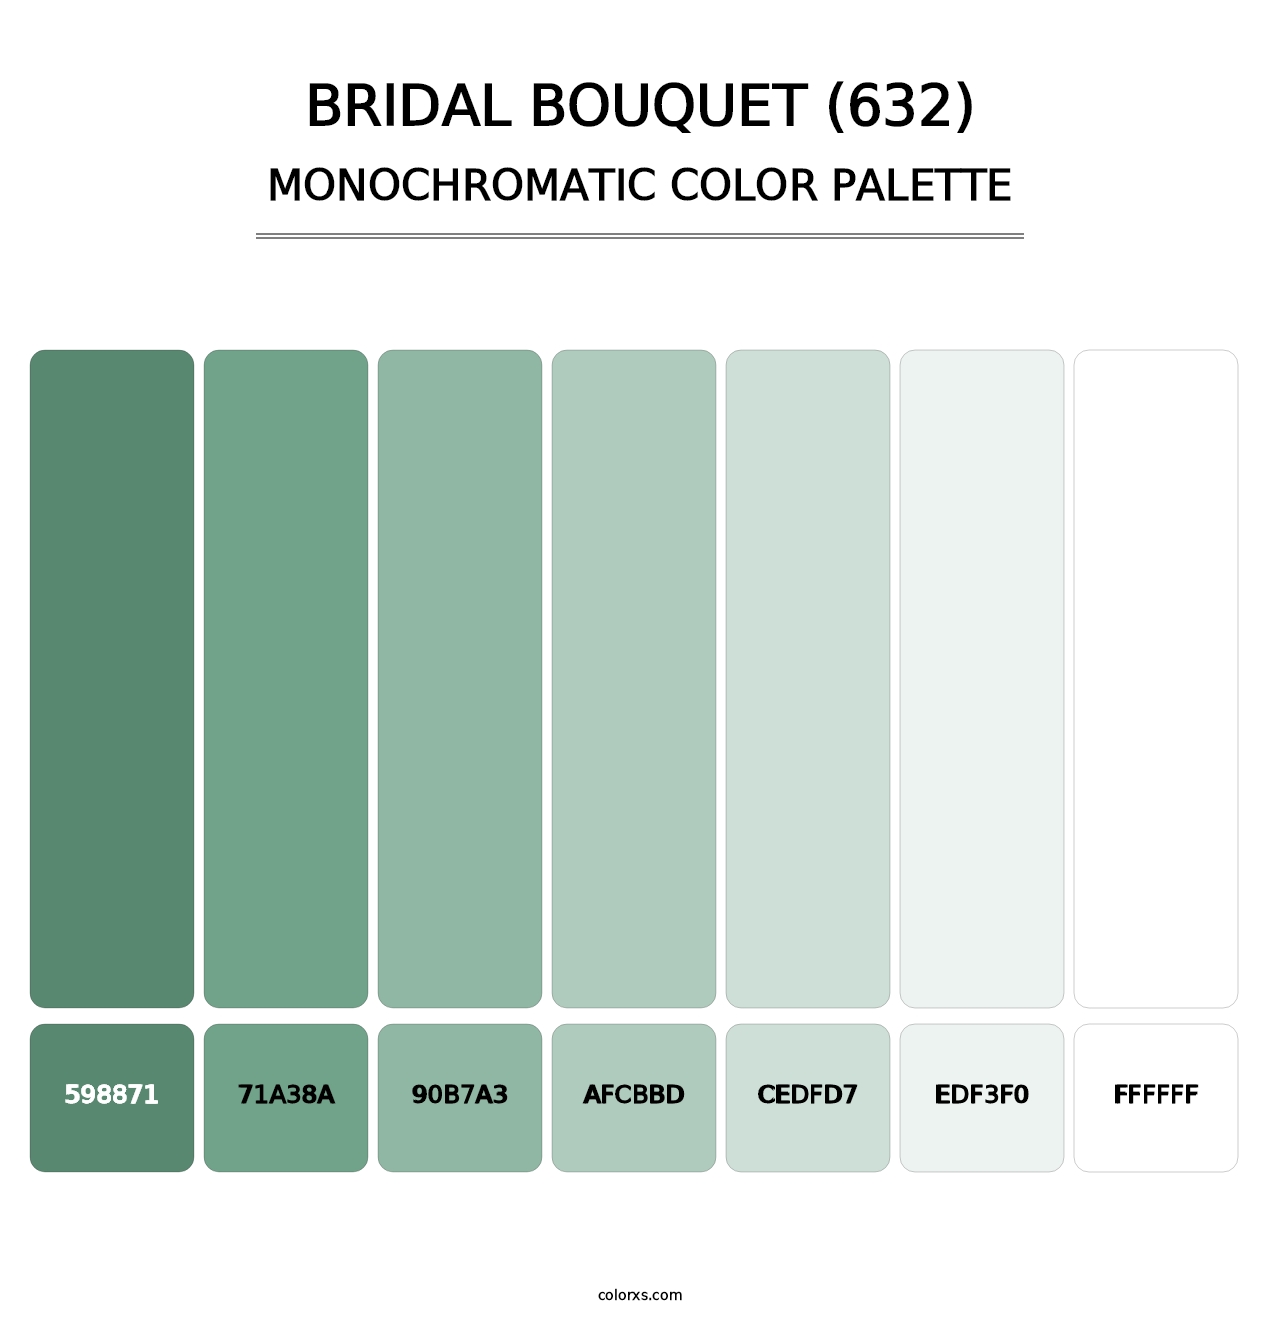 Bridal Bouquet (632) - Monochromatic Color Palette